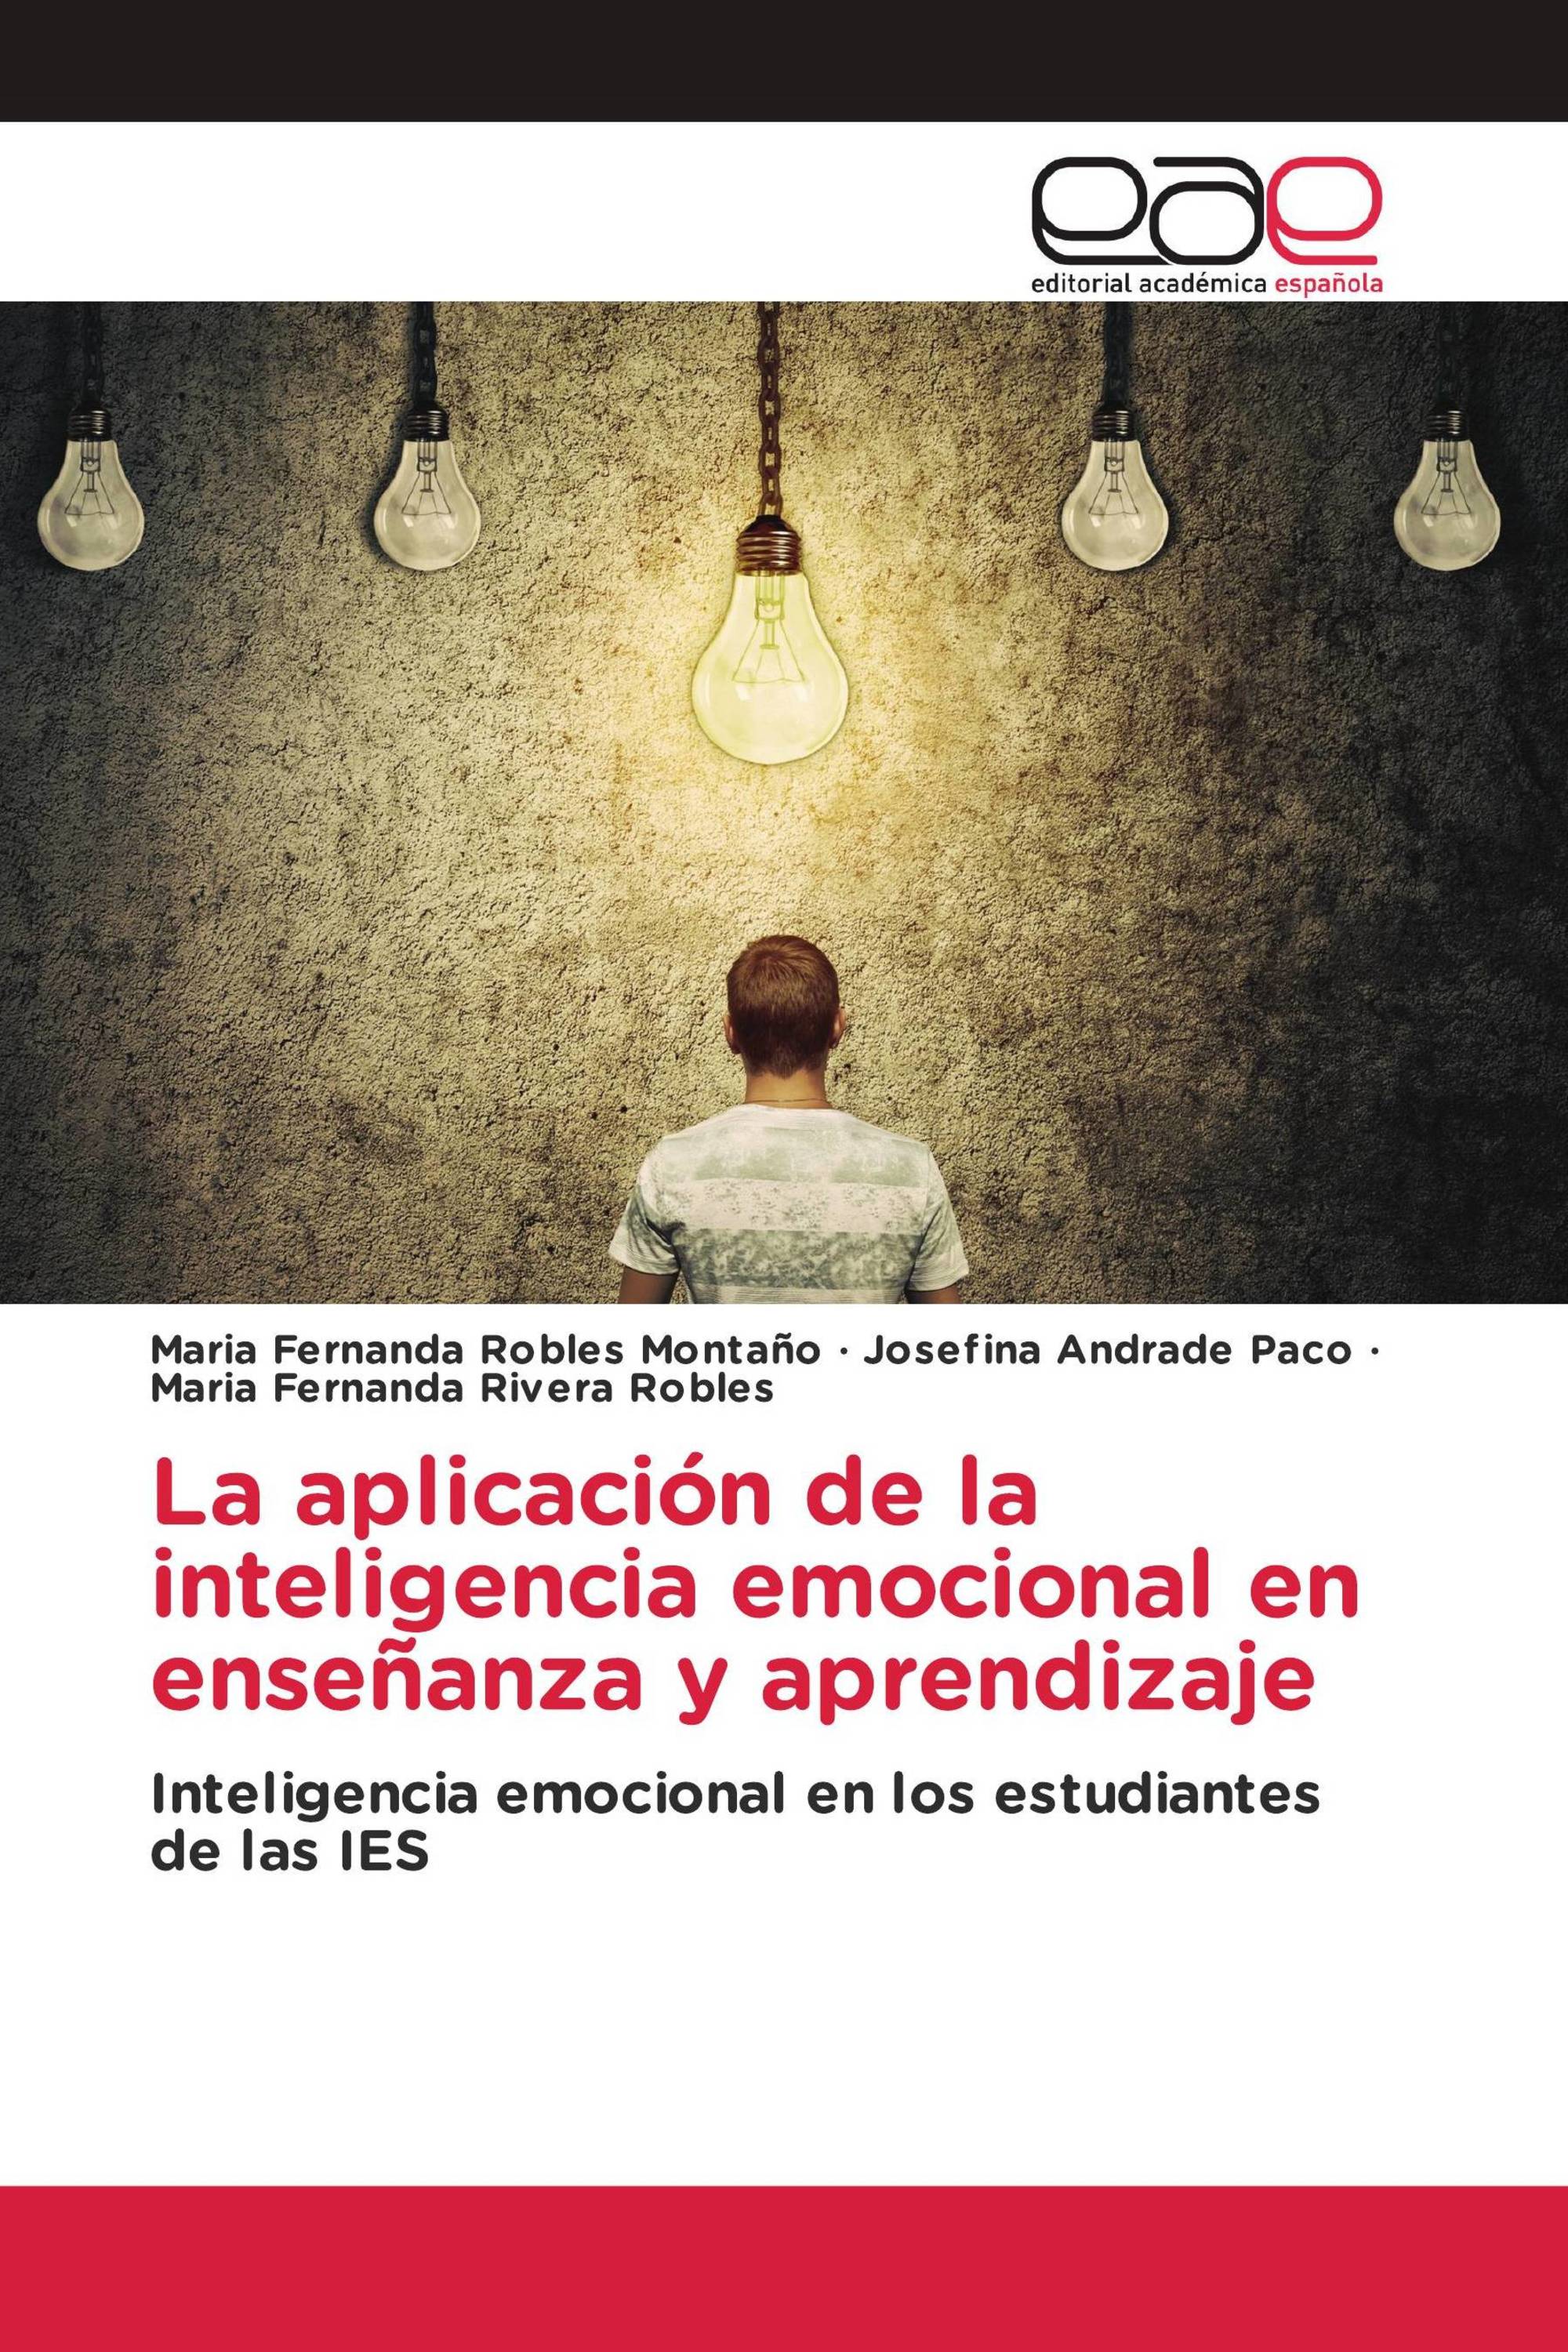 La aplicación de la inteligencia emocional en enseñanza y aprendizaje